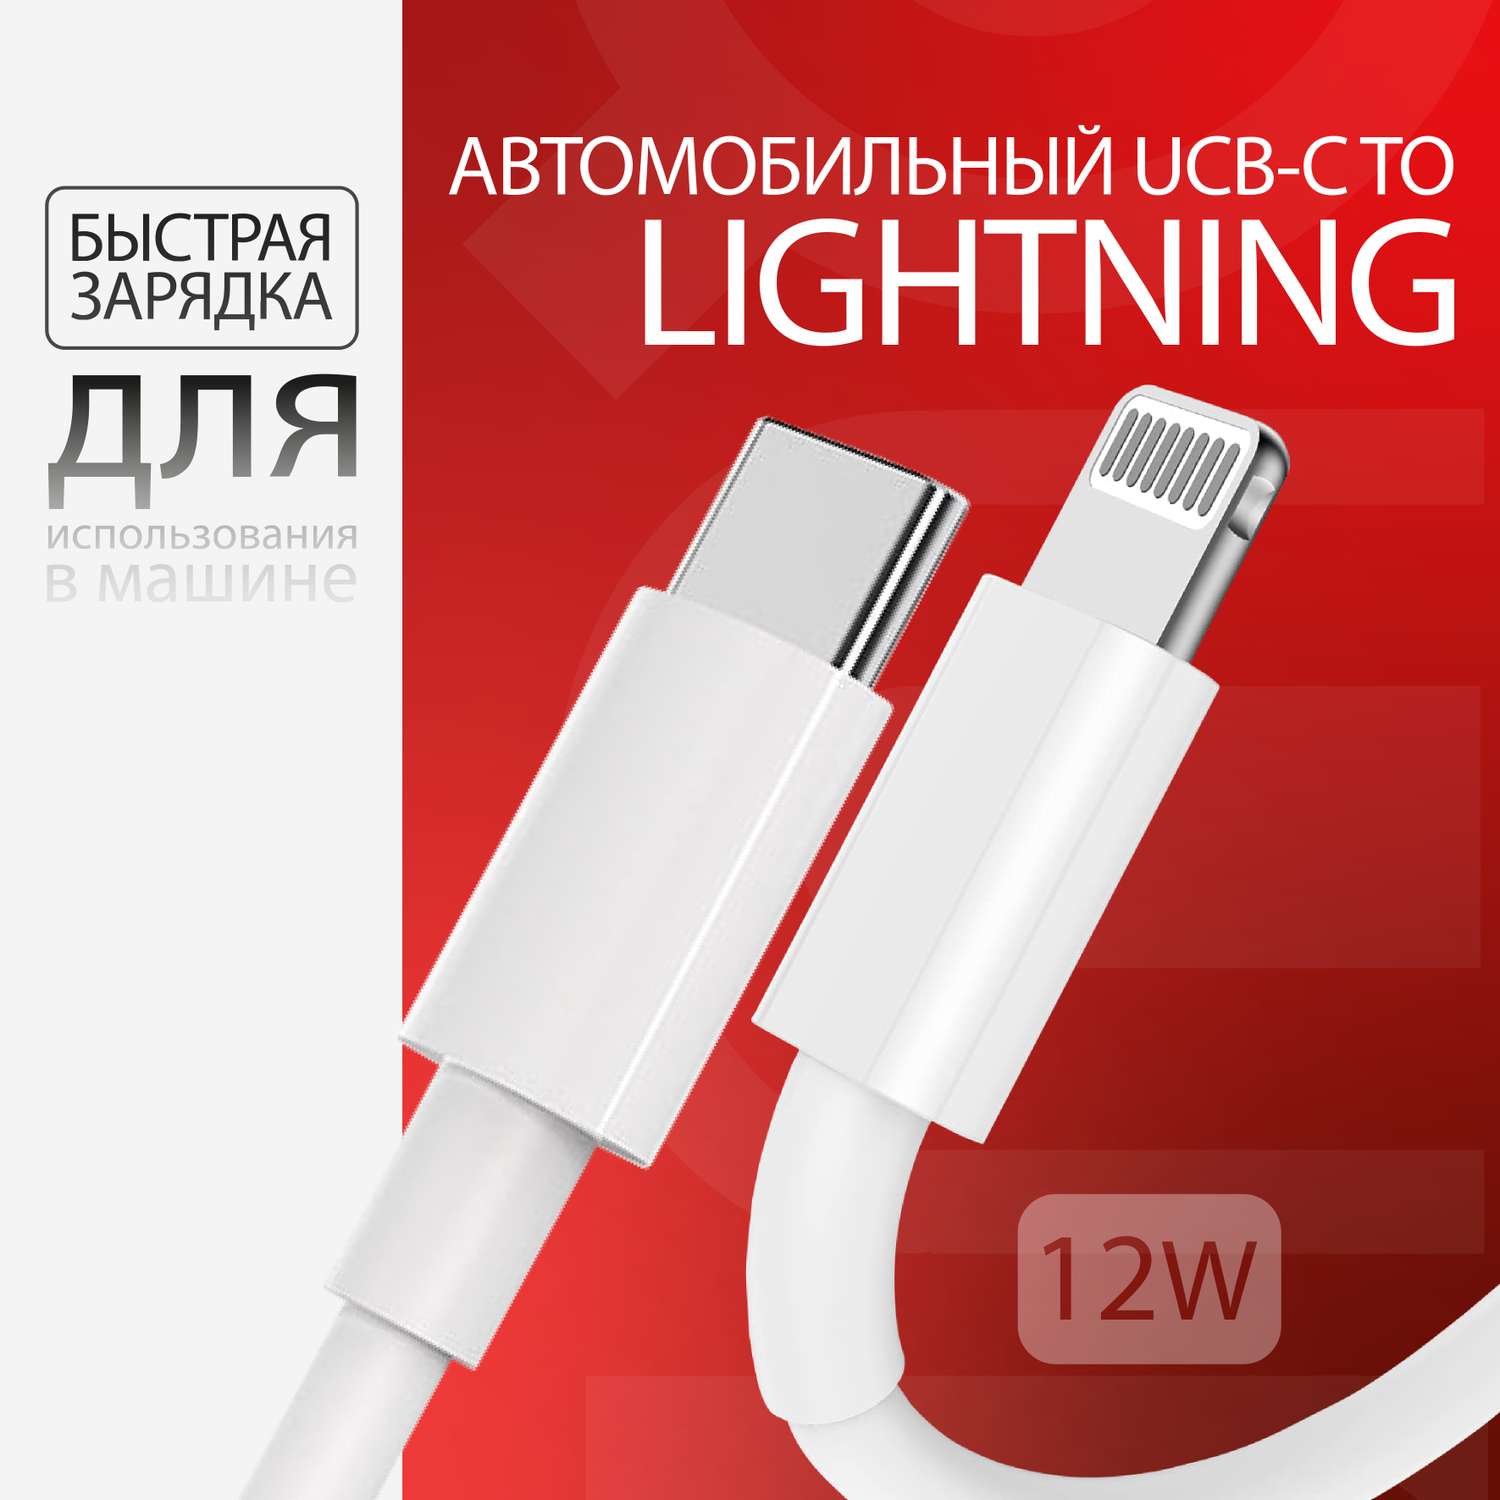 Кабель для айфона QUIVIRA Type C - Lightning 1m для iPod iPhone iPad/12w/белый зарядка - фото 1